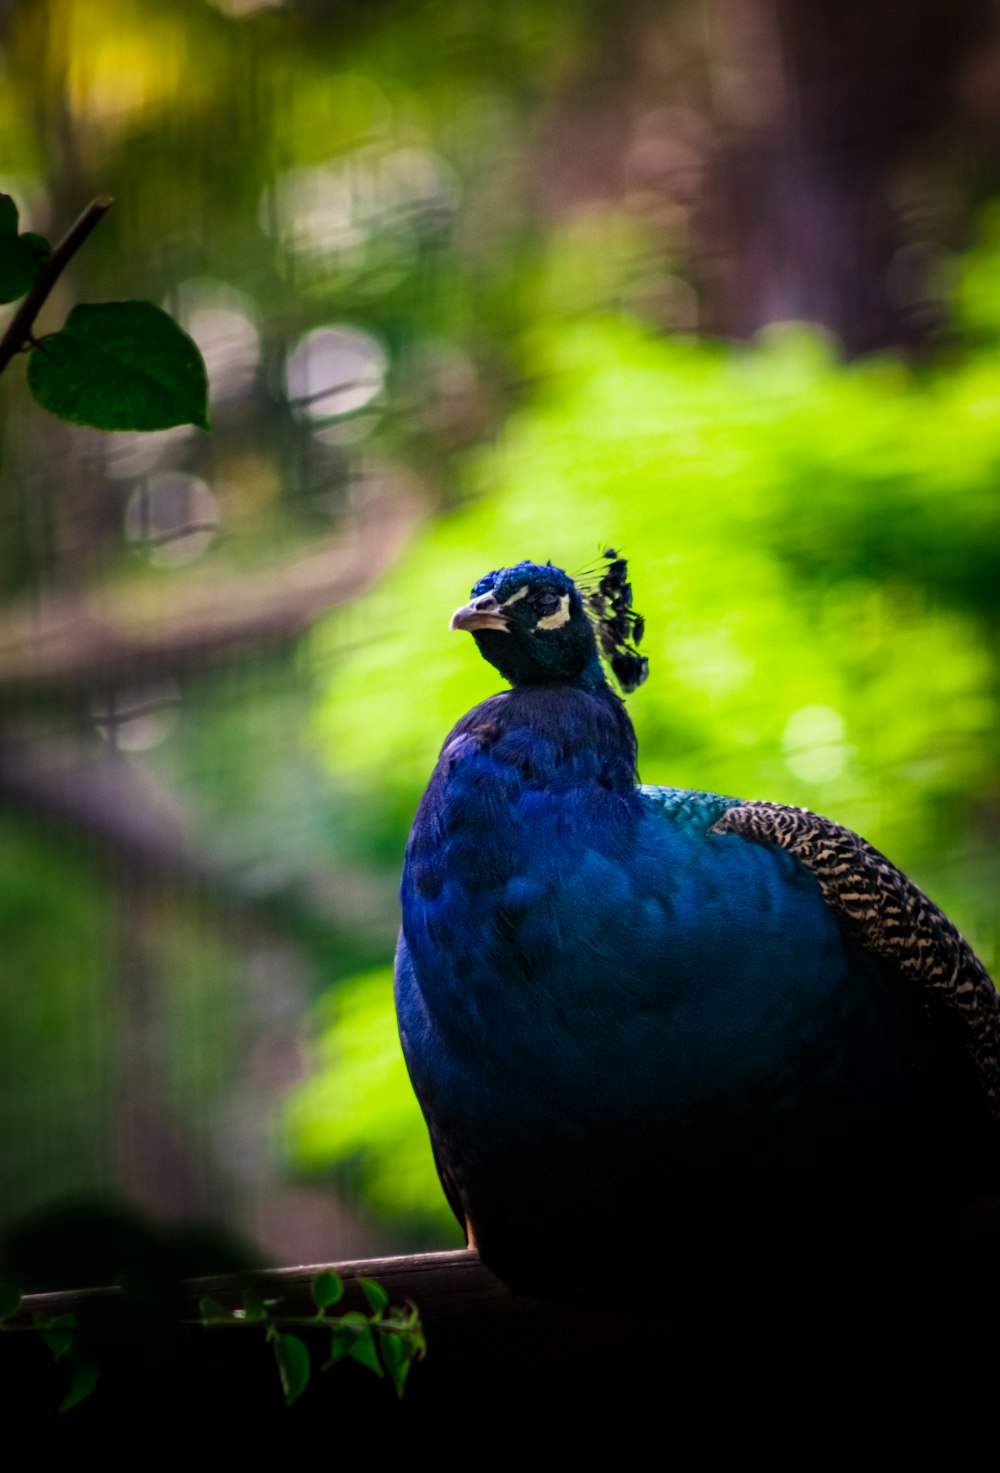 blue peacock in tilt shift lens